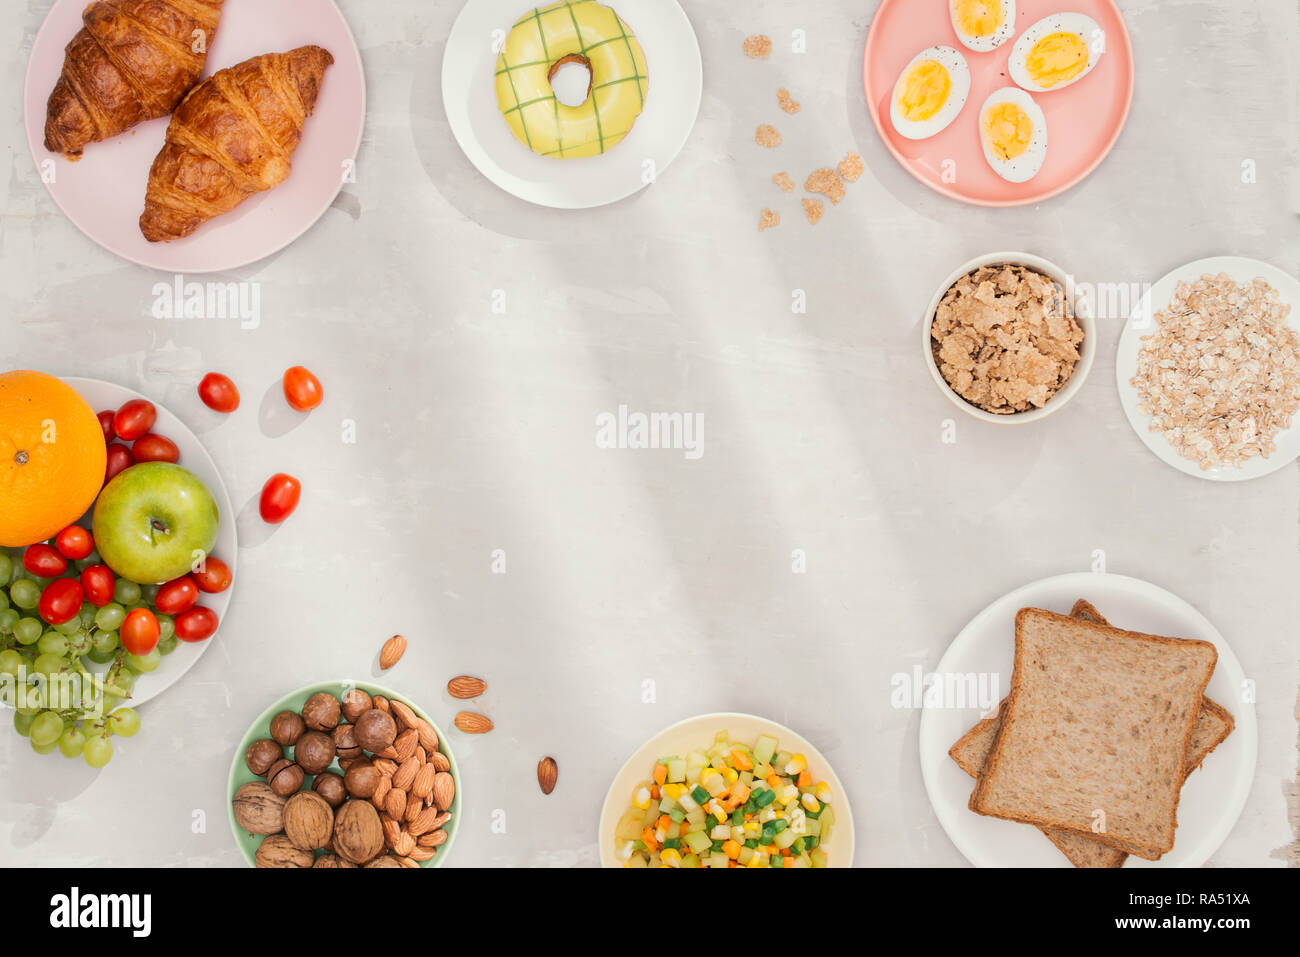 Gesundes Frühstück Zutaten auf Schwarz konkreten Hintergrund. Haferflocken, Mandeln Milch, Nüsse, Früchte und Beeren. Gesunder Lebensstil, Diät, gesund essen Stockfoto